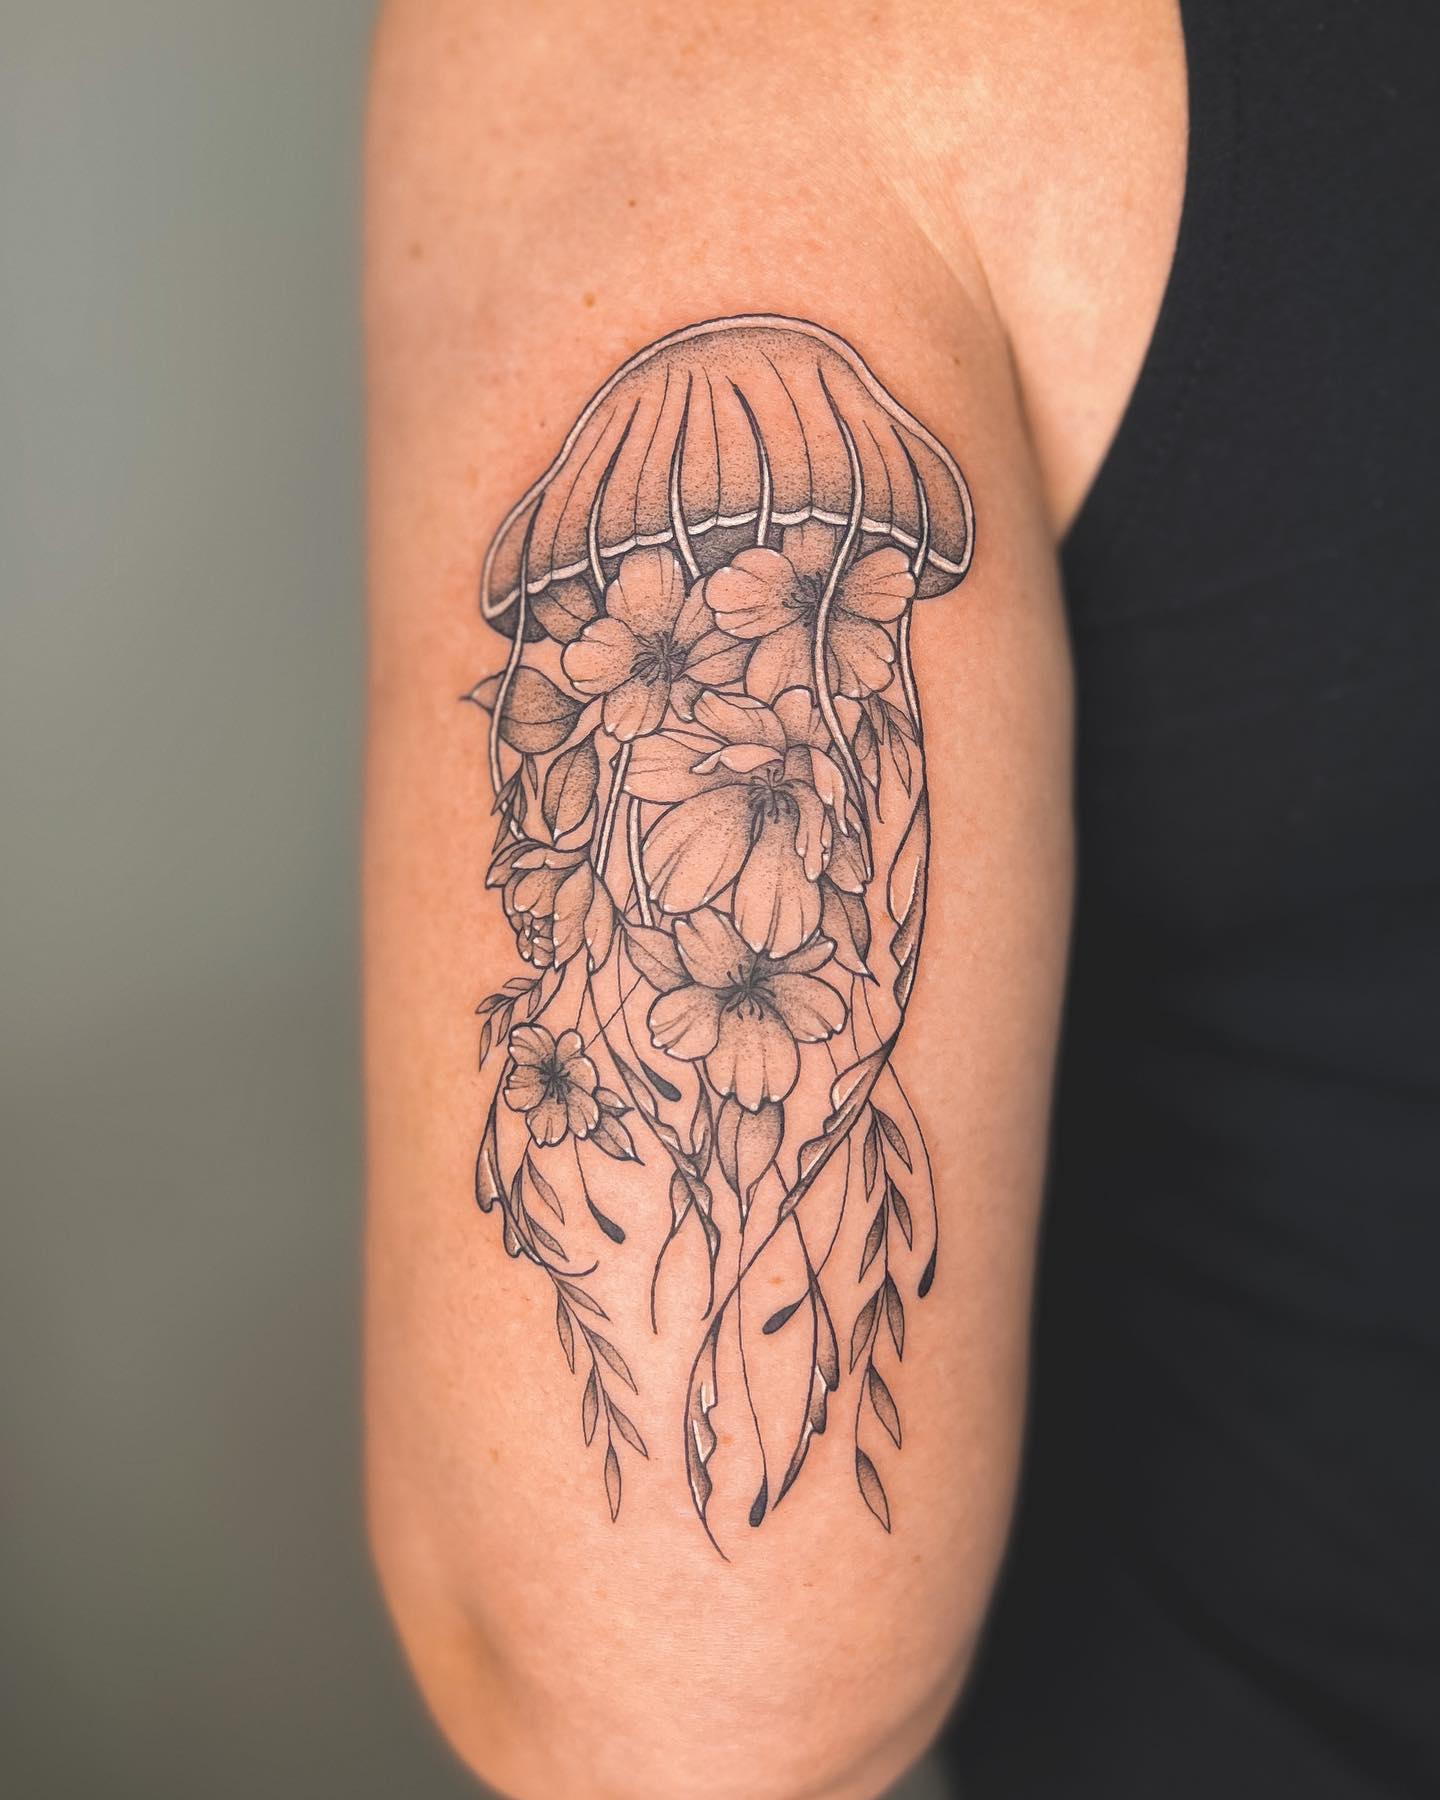 Tatuaje de medusa en tinta negra.